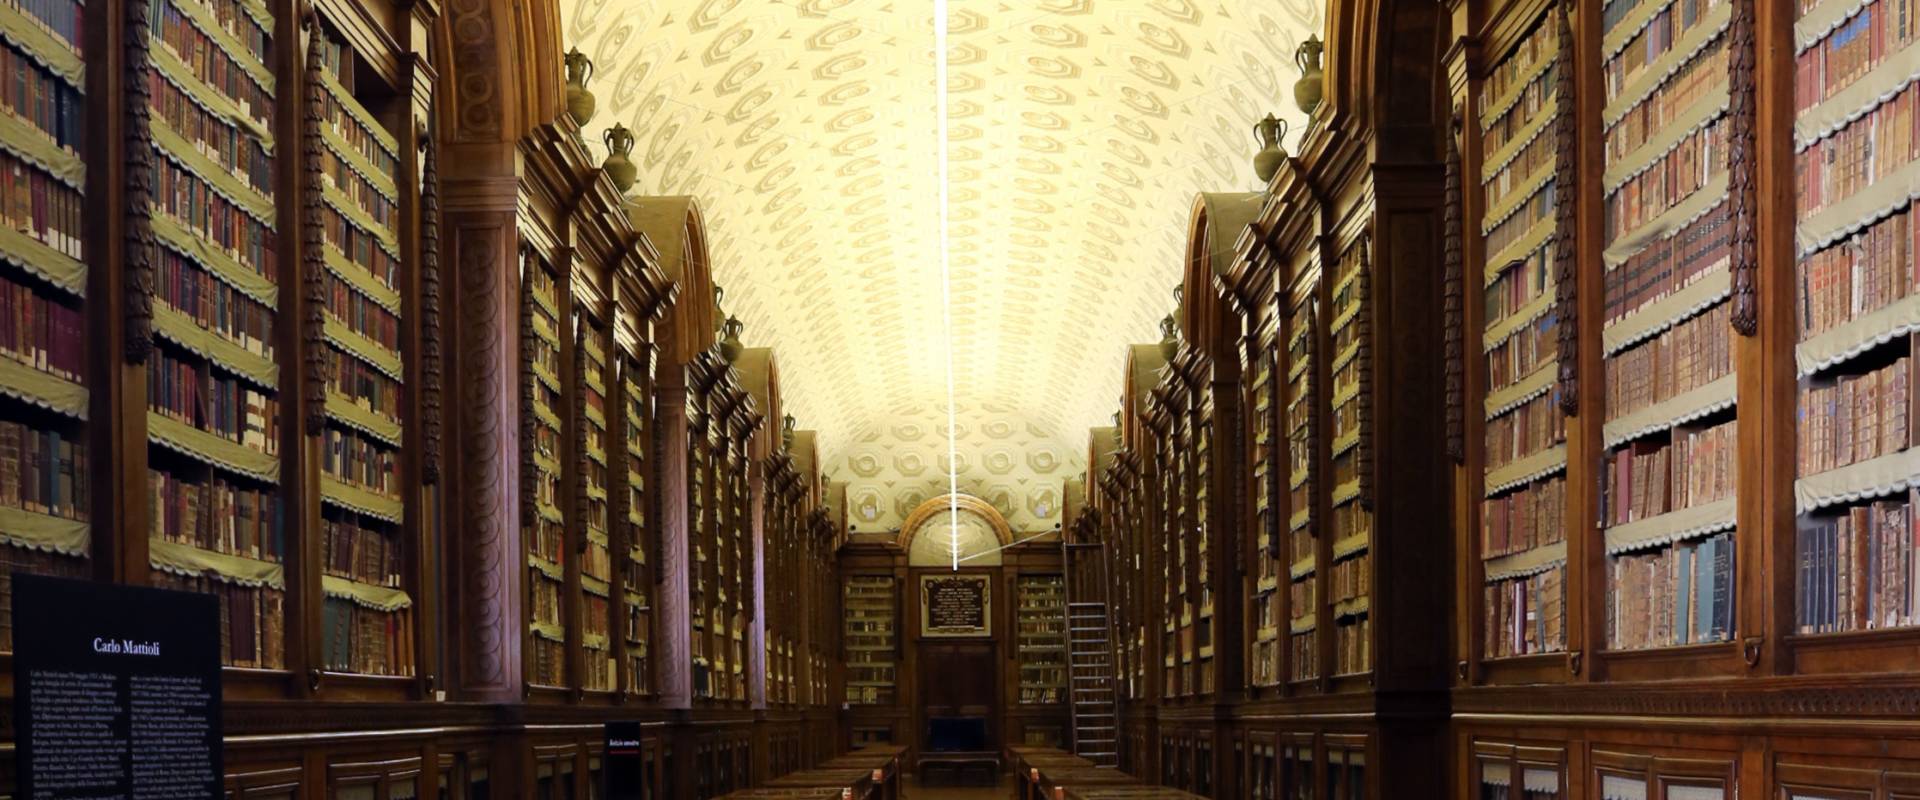 Parma, biblioteca palatina, 02 foto di Sailko